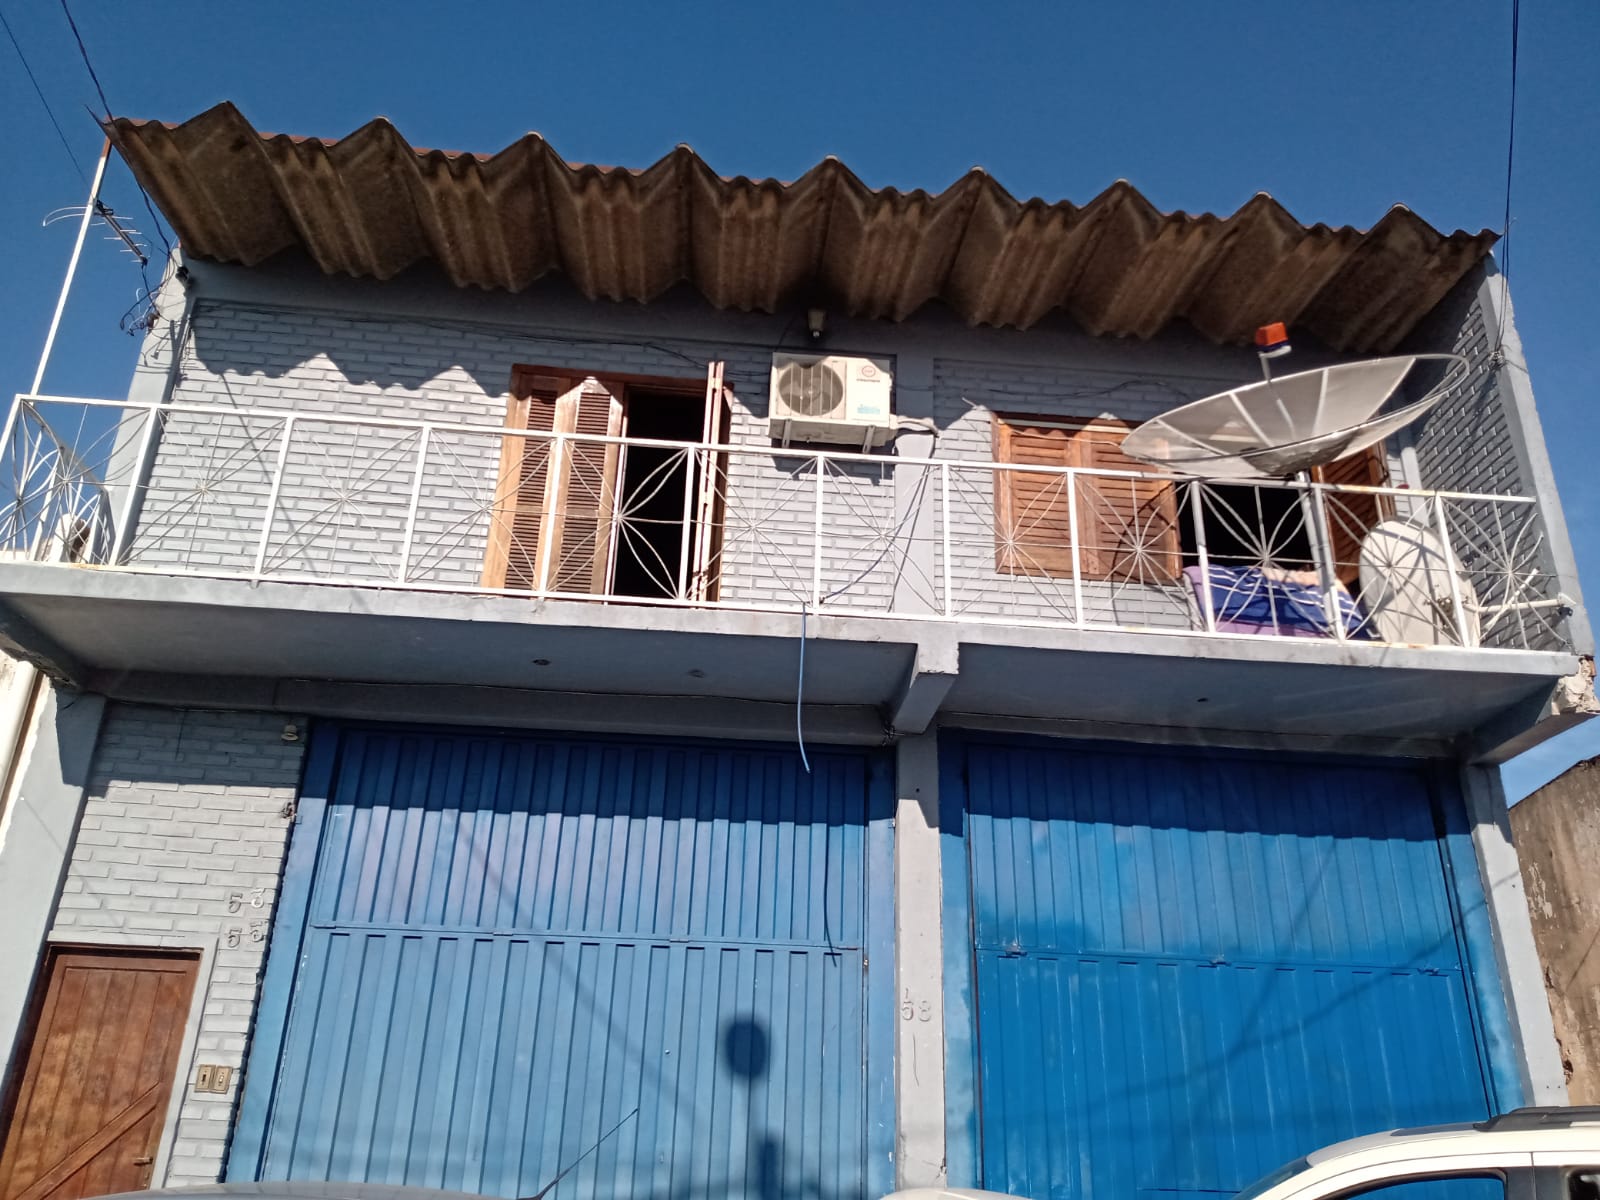 Imóveis Chagas Santana do Livramento - Divisa - Galpao e 2 Apartamentos na Divisa